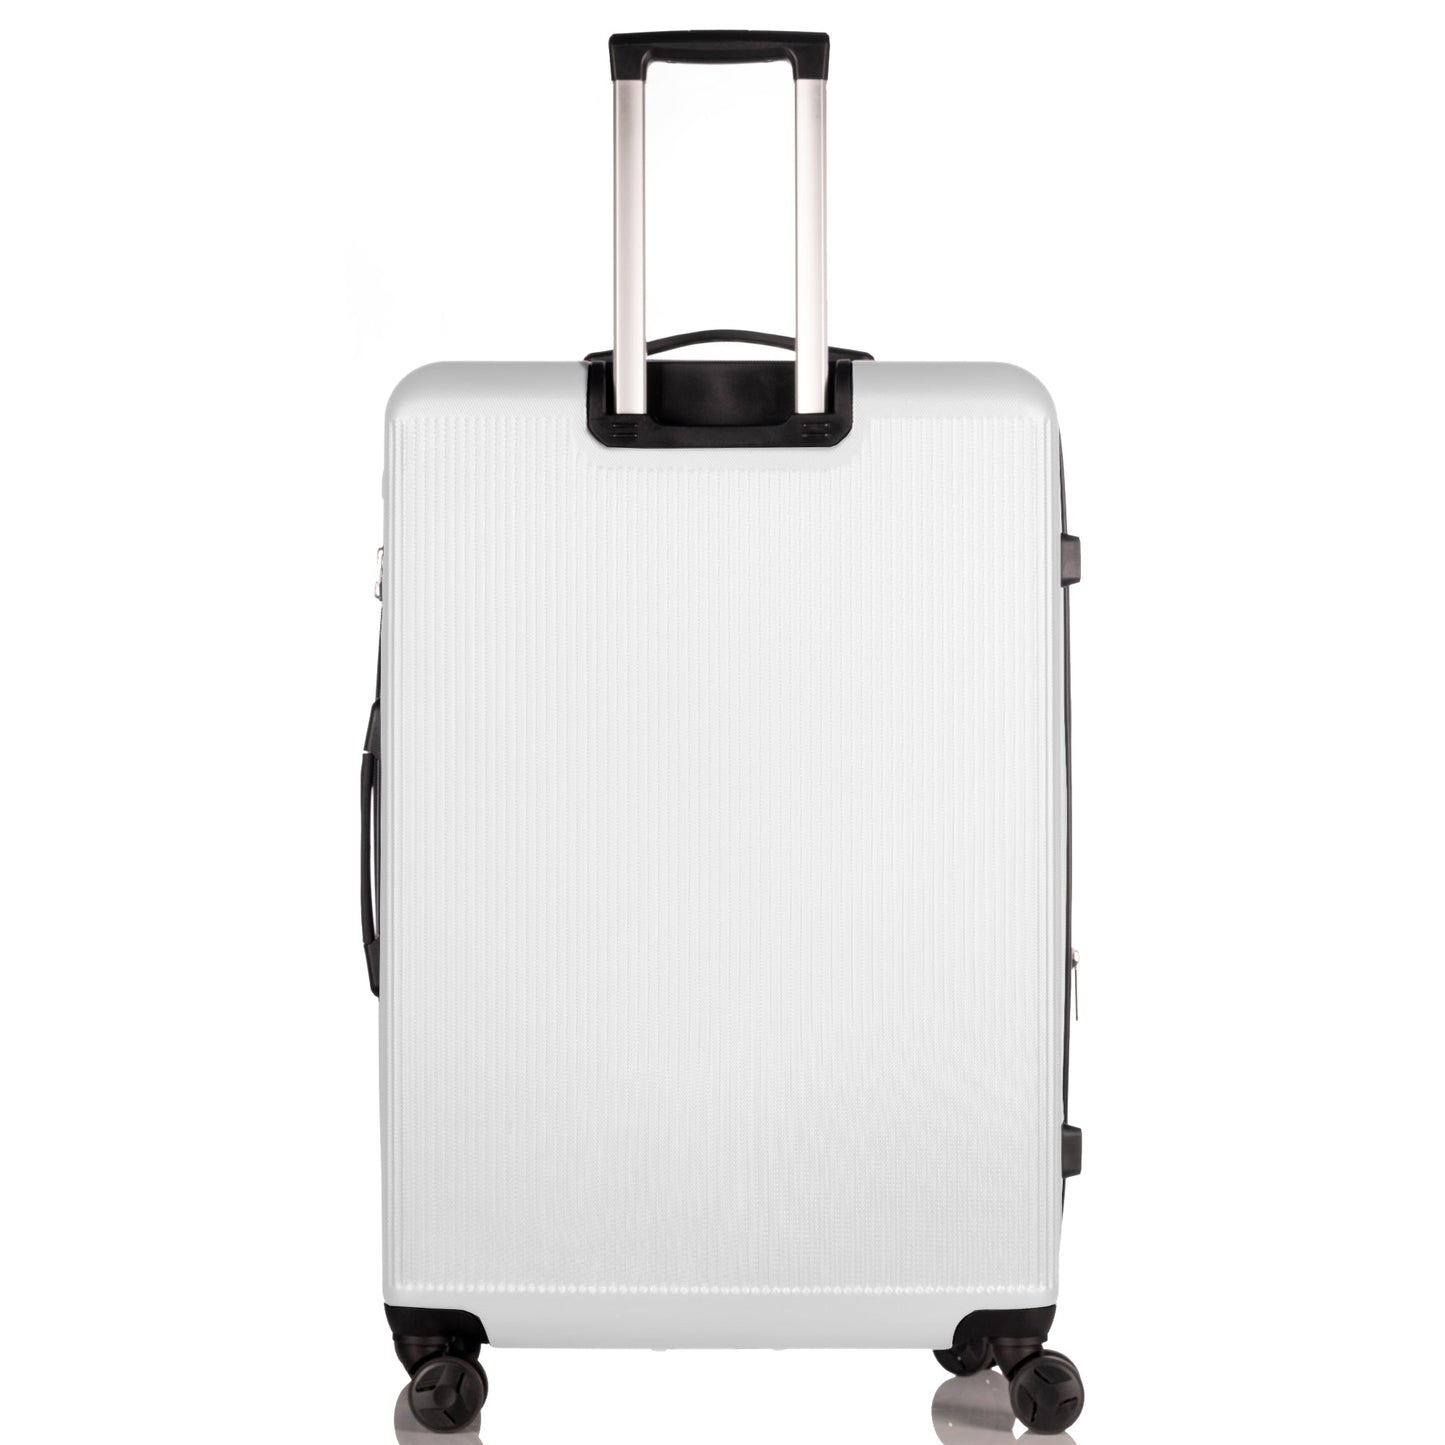 Hardhead Nasa JFK Collection White Luggage (21/25/29") Suitcase Lock Spinner Hardshell